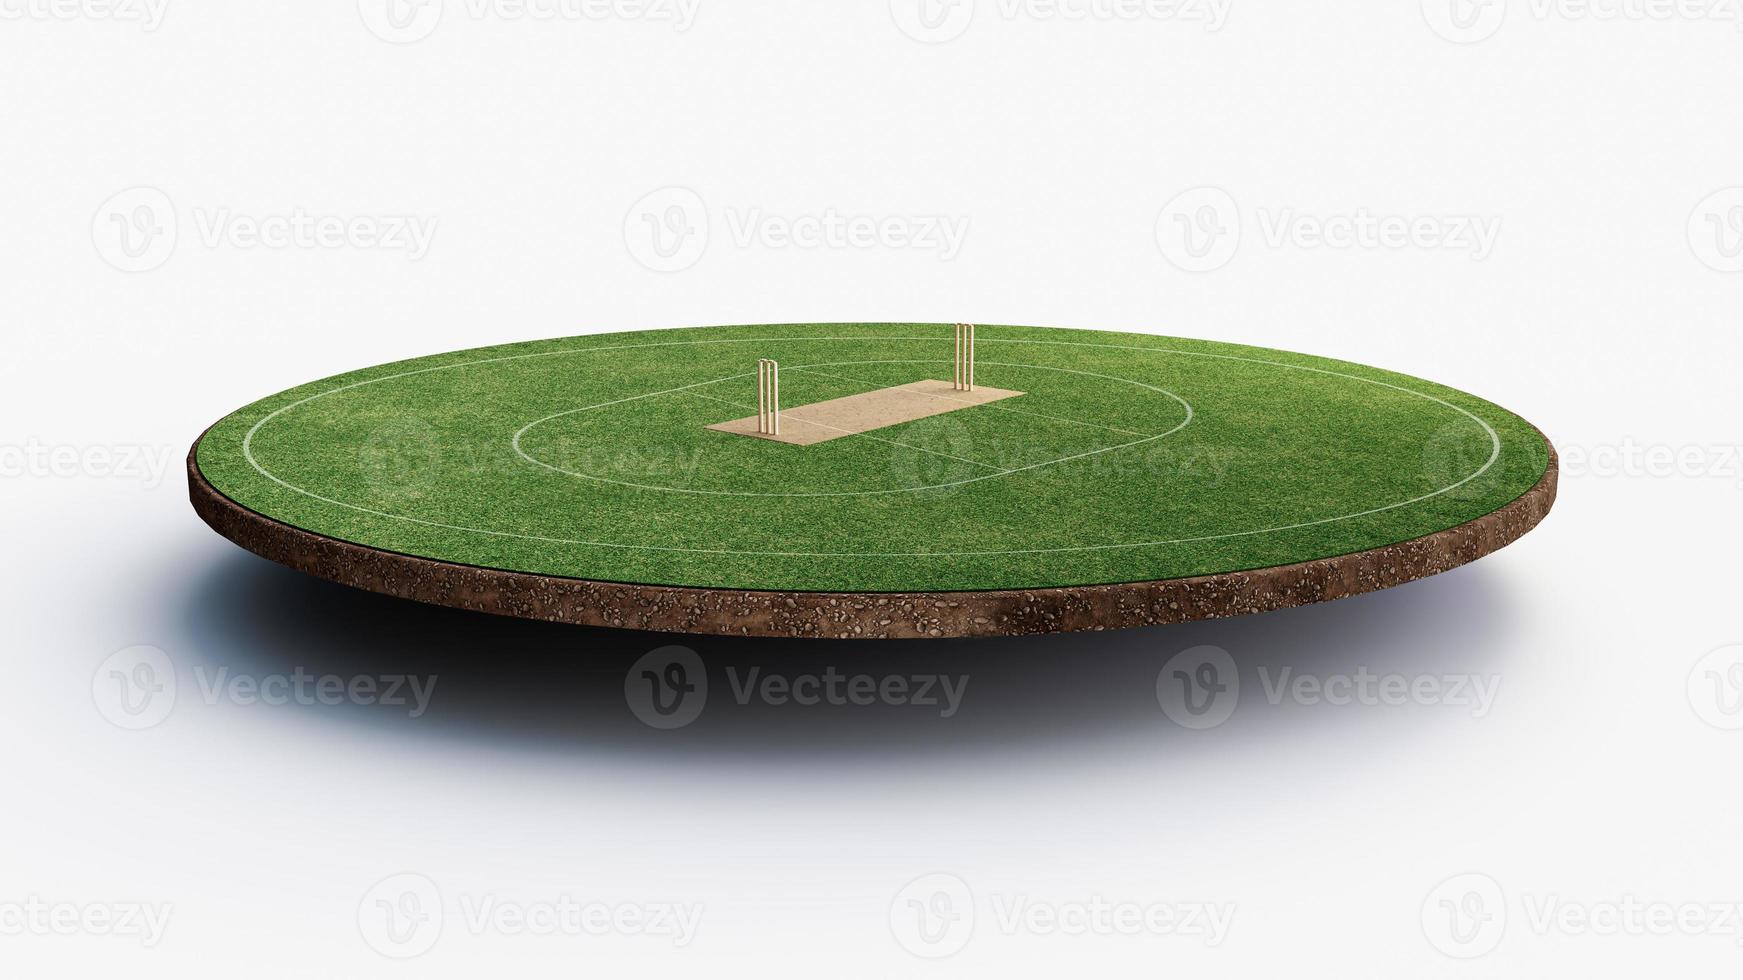 vue de face du stade de cricket sur le terrain de cricket ou le terrain de jeu de sport de balle, le stade d'herbe ou l'arène circulaire pour la série de cricket, la pelouse verte ou le terrain pour le batteur, le quilleur. illustration 3d de champ extérieur photo